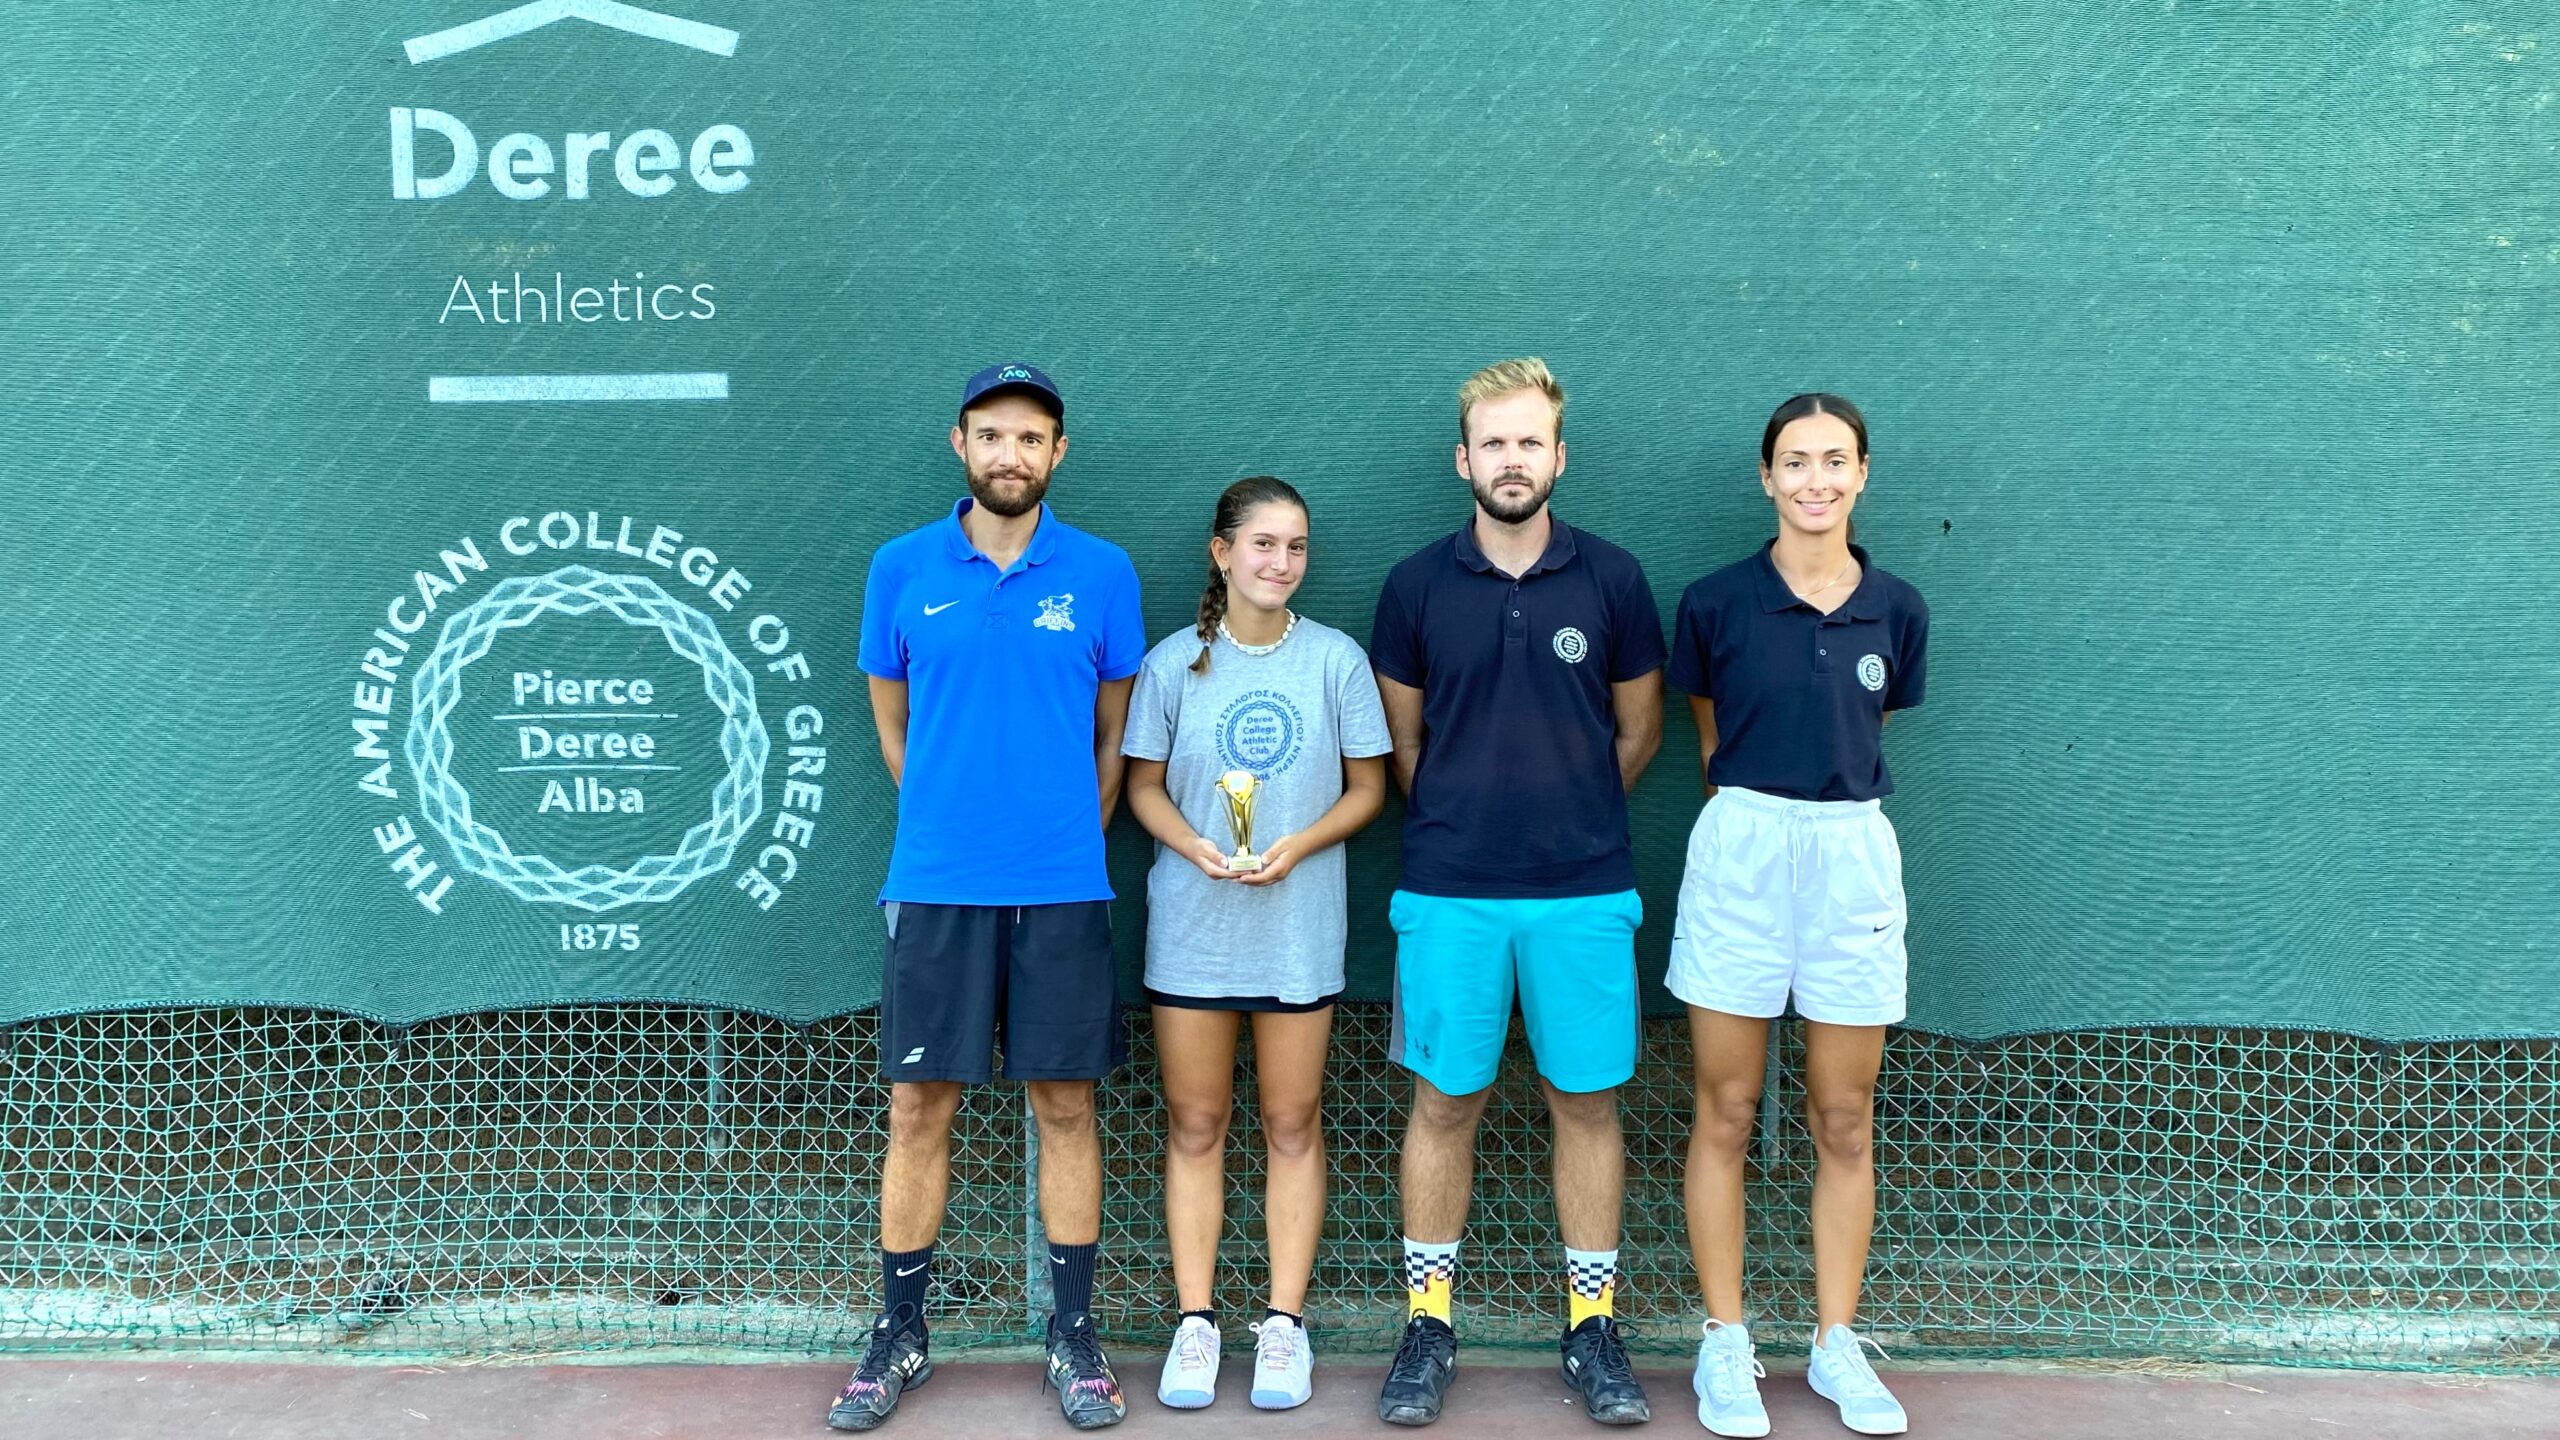 1η θέση για την Deree Tennis Academy στο Ε4 τουρνουά τένις στον Μαραθώνα!